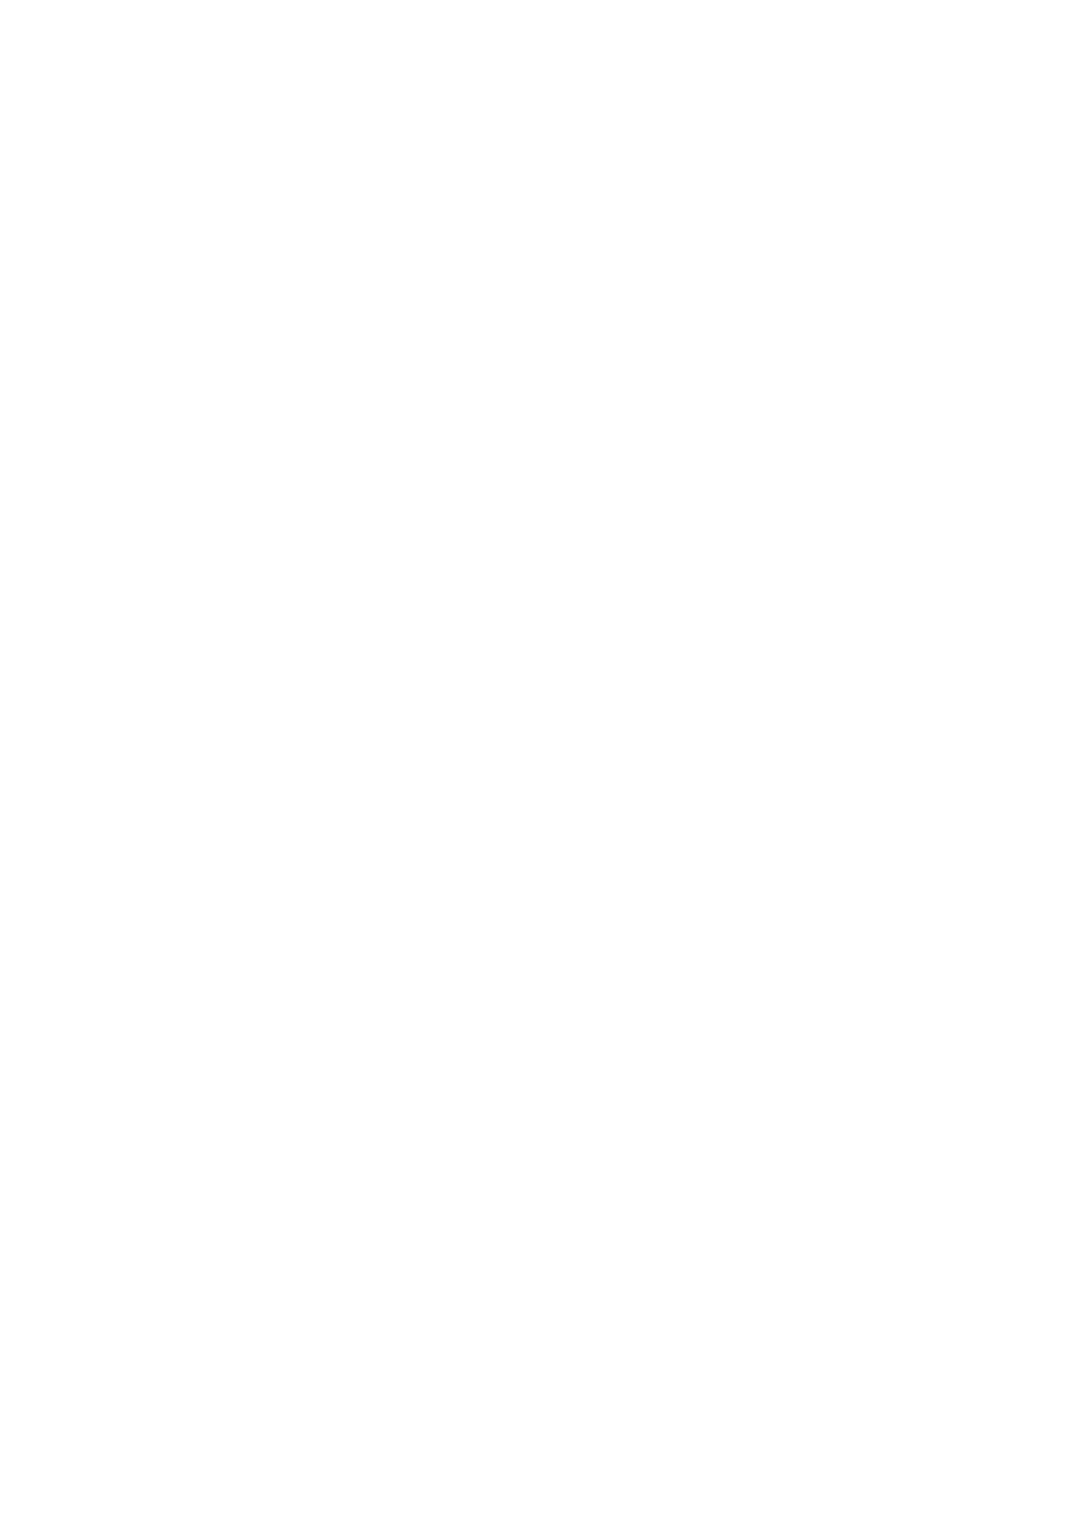 [千書店 (千替千鶴)] 小梅ちゃんが幽霊の力を借りてHするらしい (アイドルマスター シンデレラガールズ) [DL版]